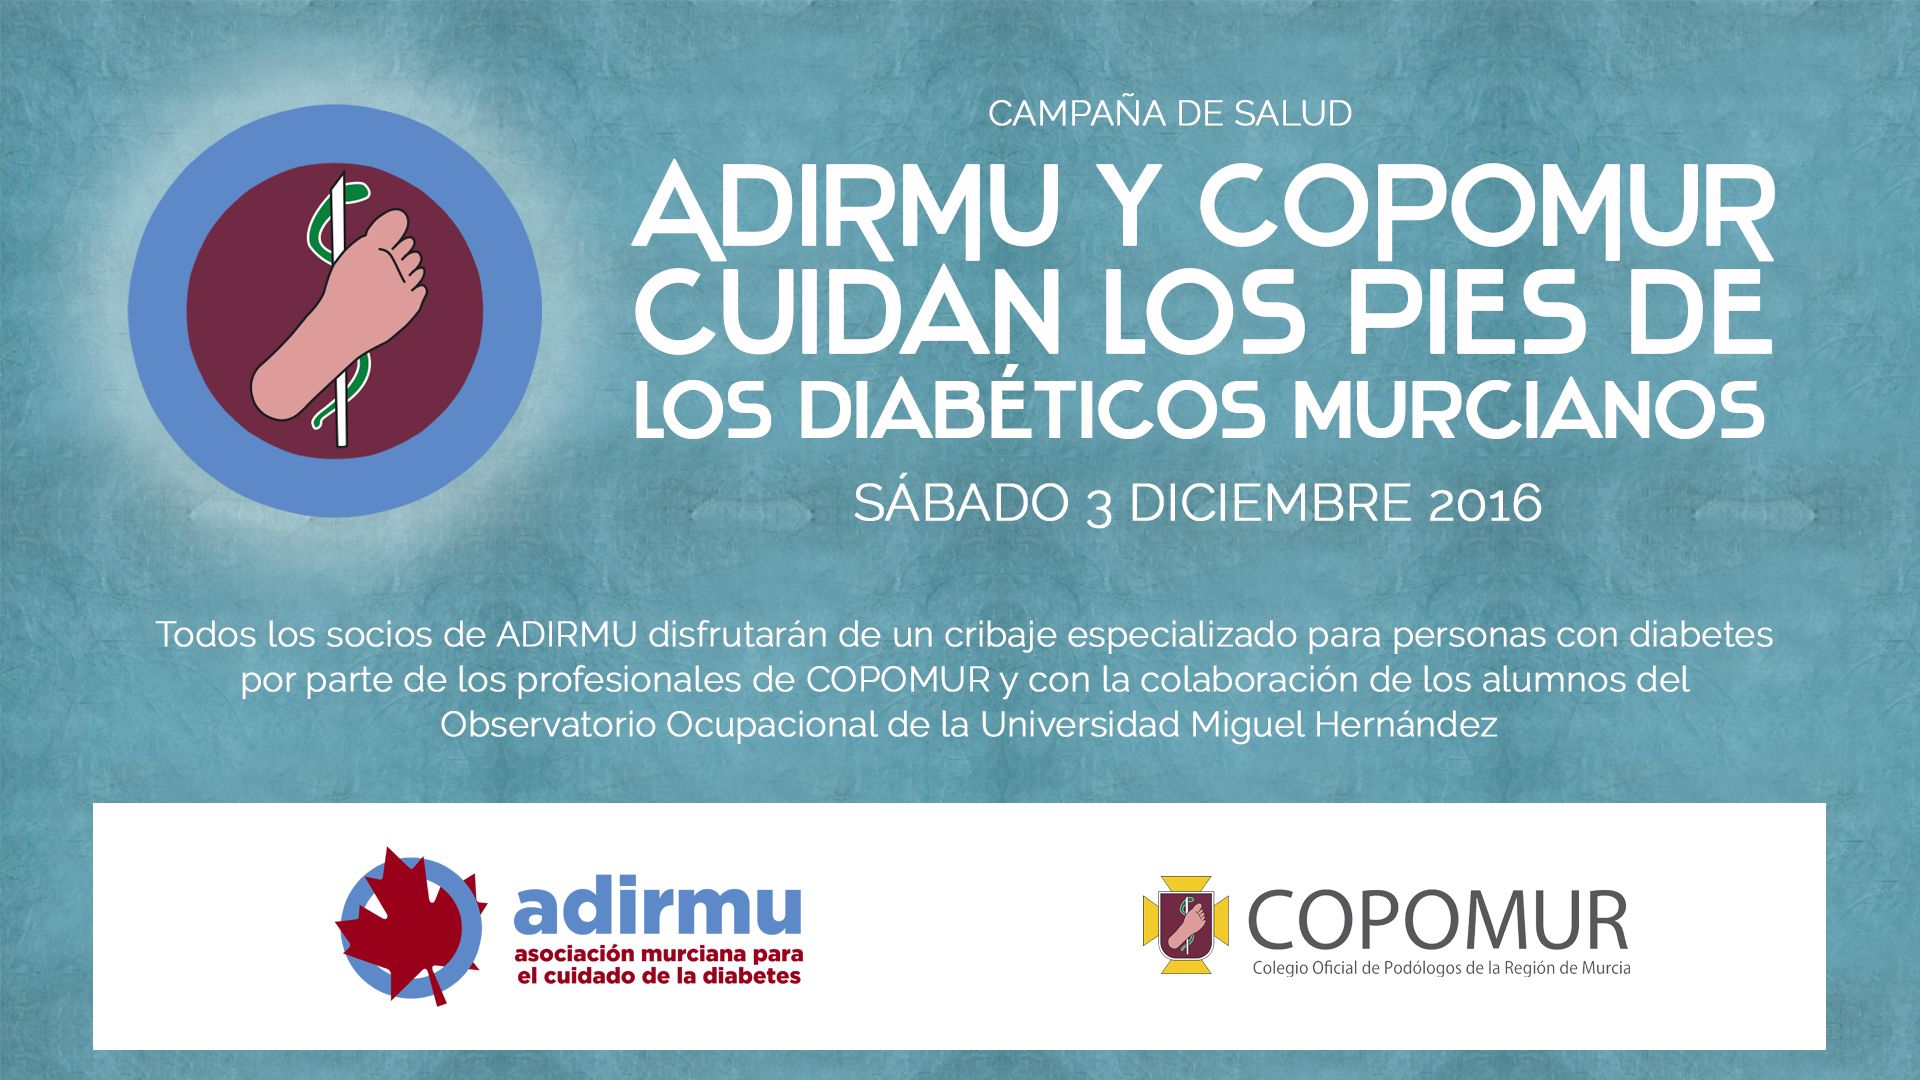 ADIRMU y COPOMUR cuidan los pies de los diabéticos murcianos